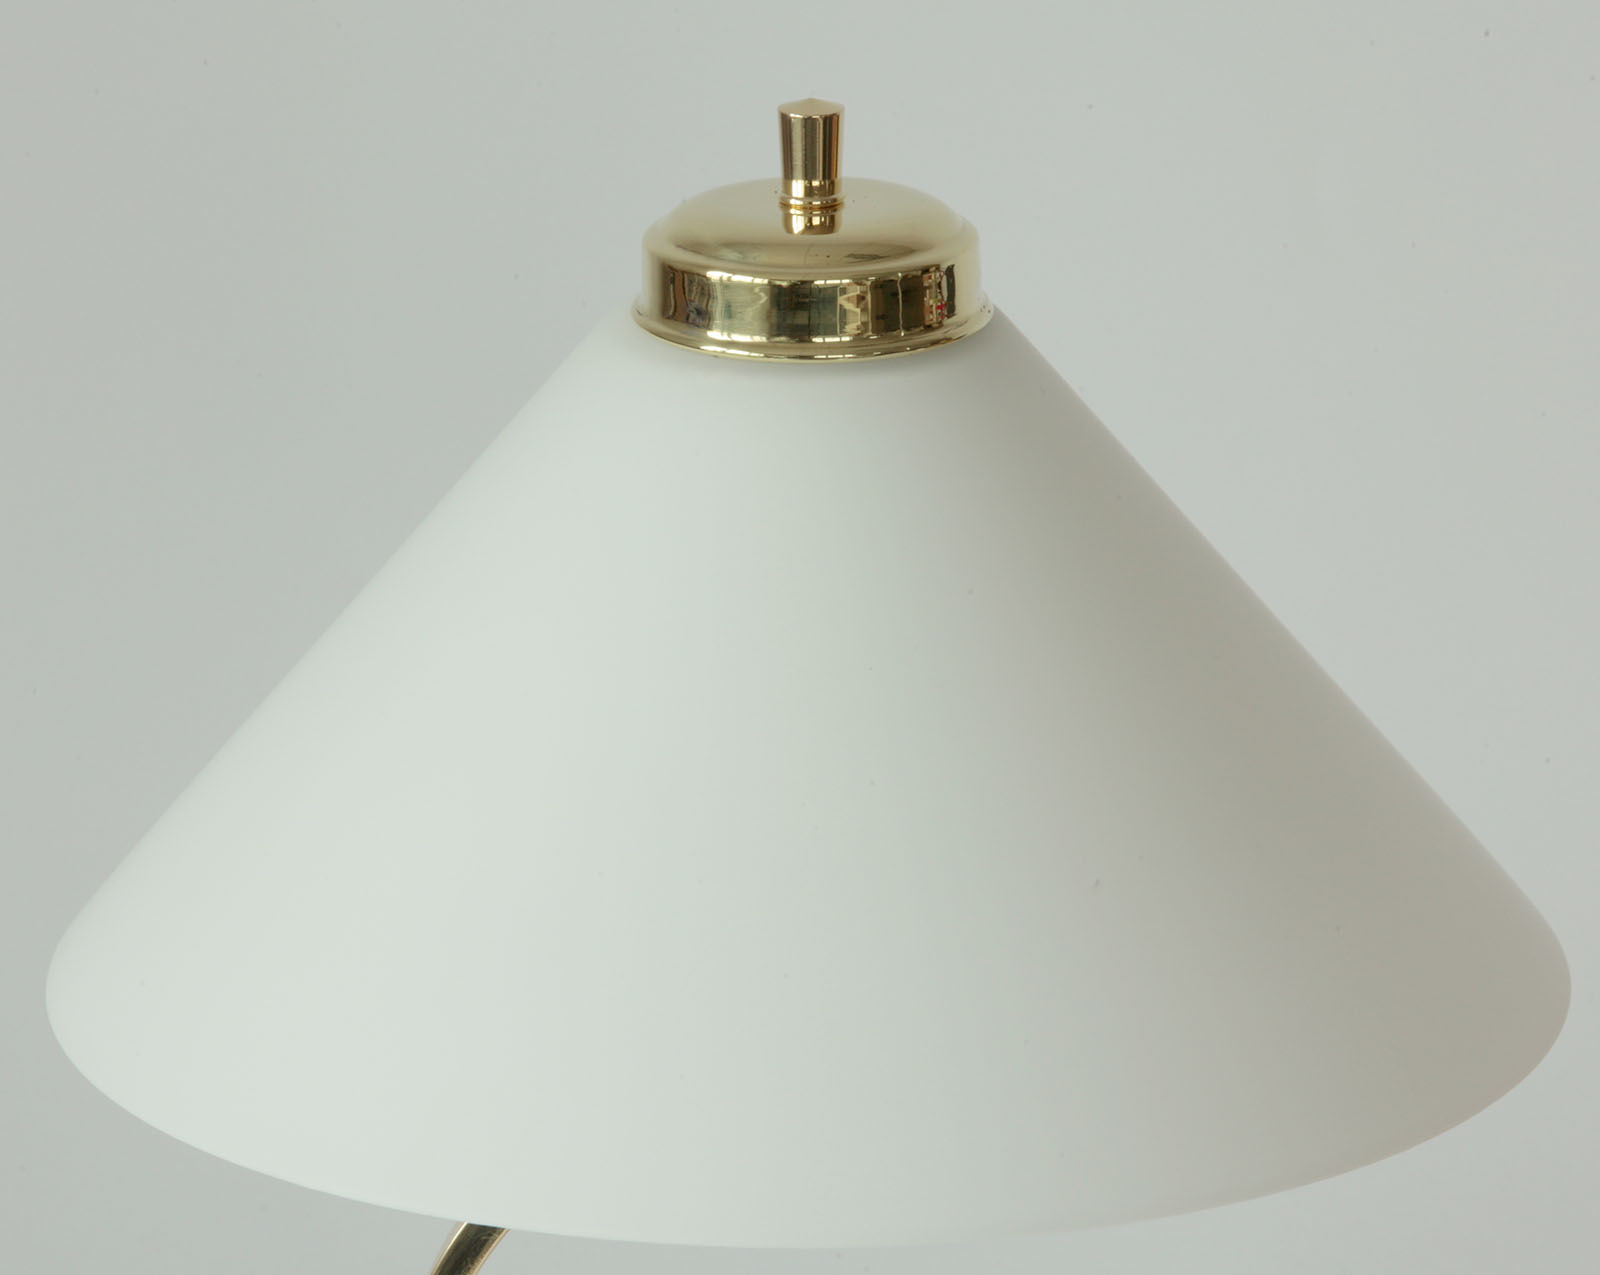 Kleine Messing-Tischlampe mit Kegel-Glasschirm: Messing poliert, lackiert mit Opalglas weiß glänzend